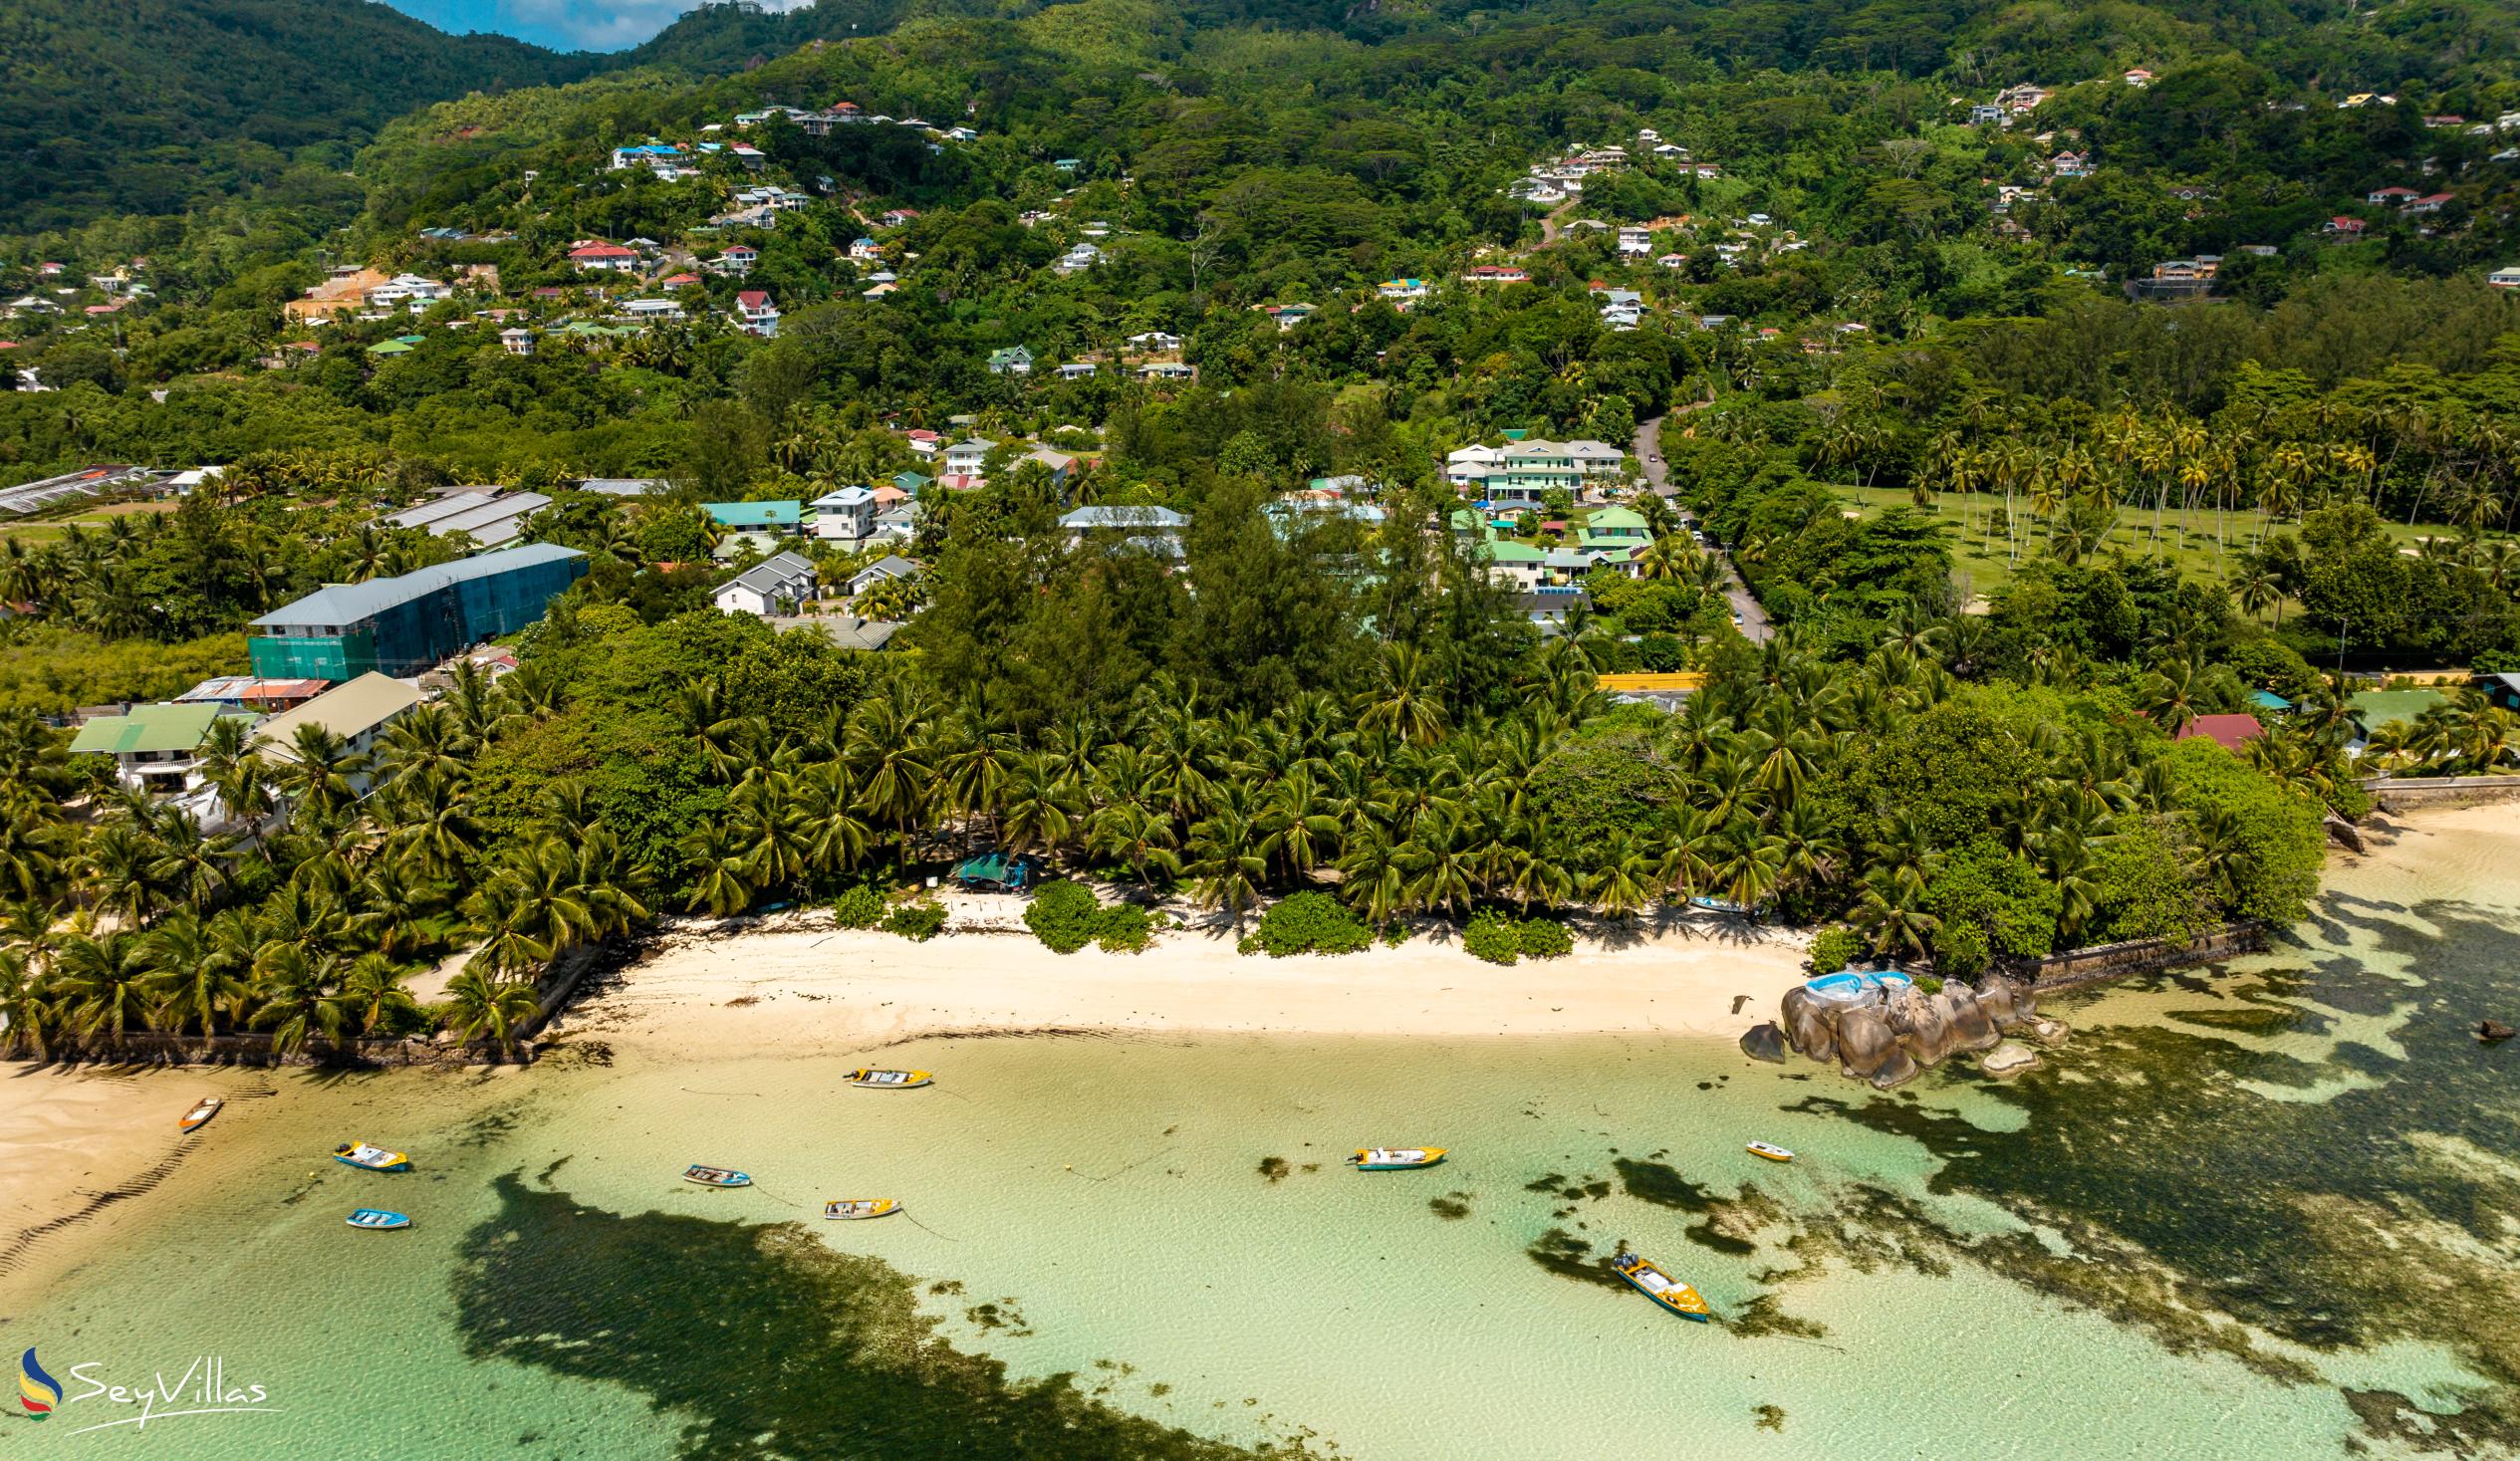 Photo 86: Hotel La Roussette - Location - Mahé (Seychelles)